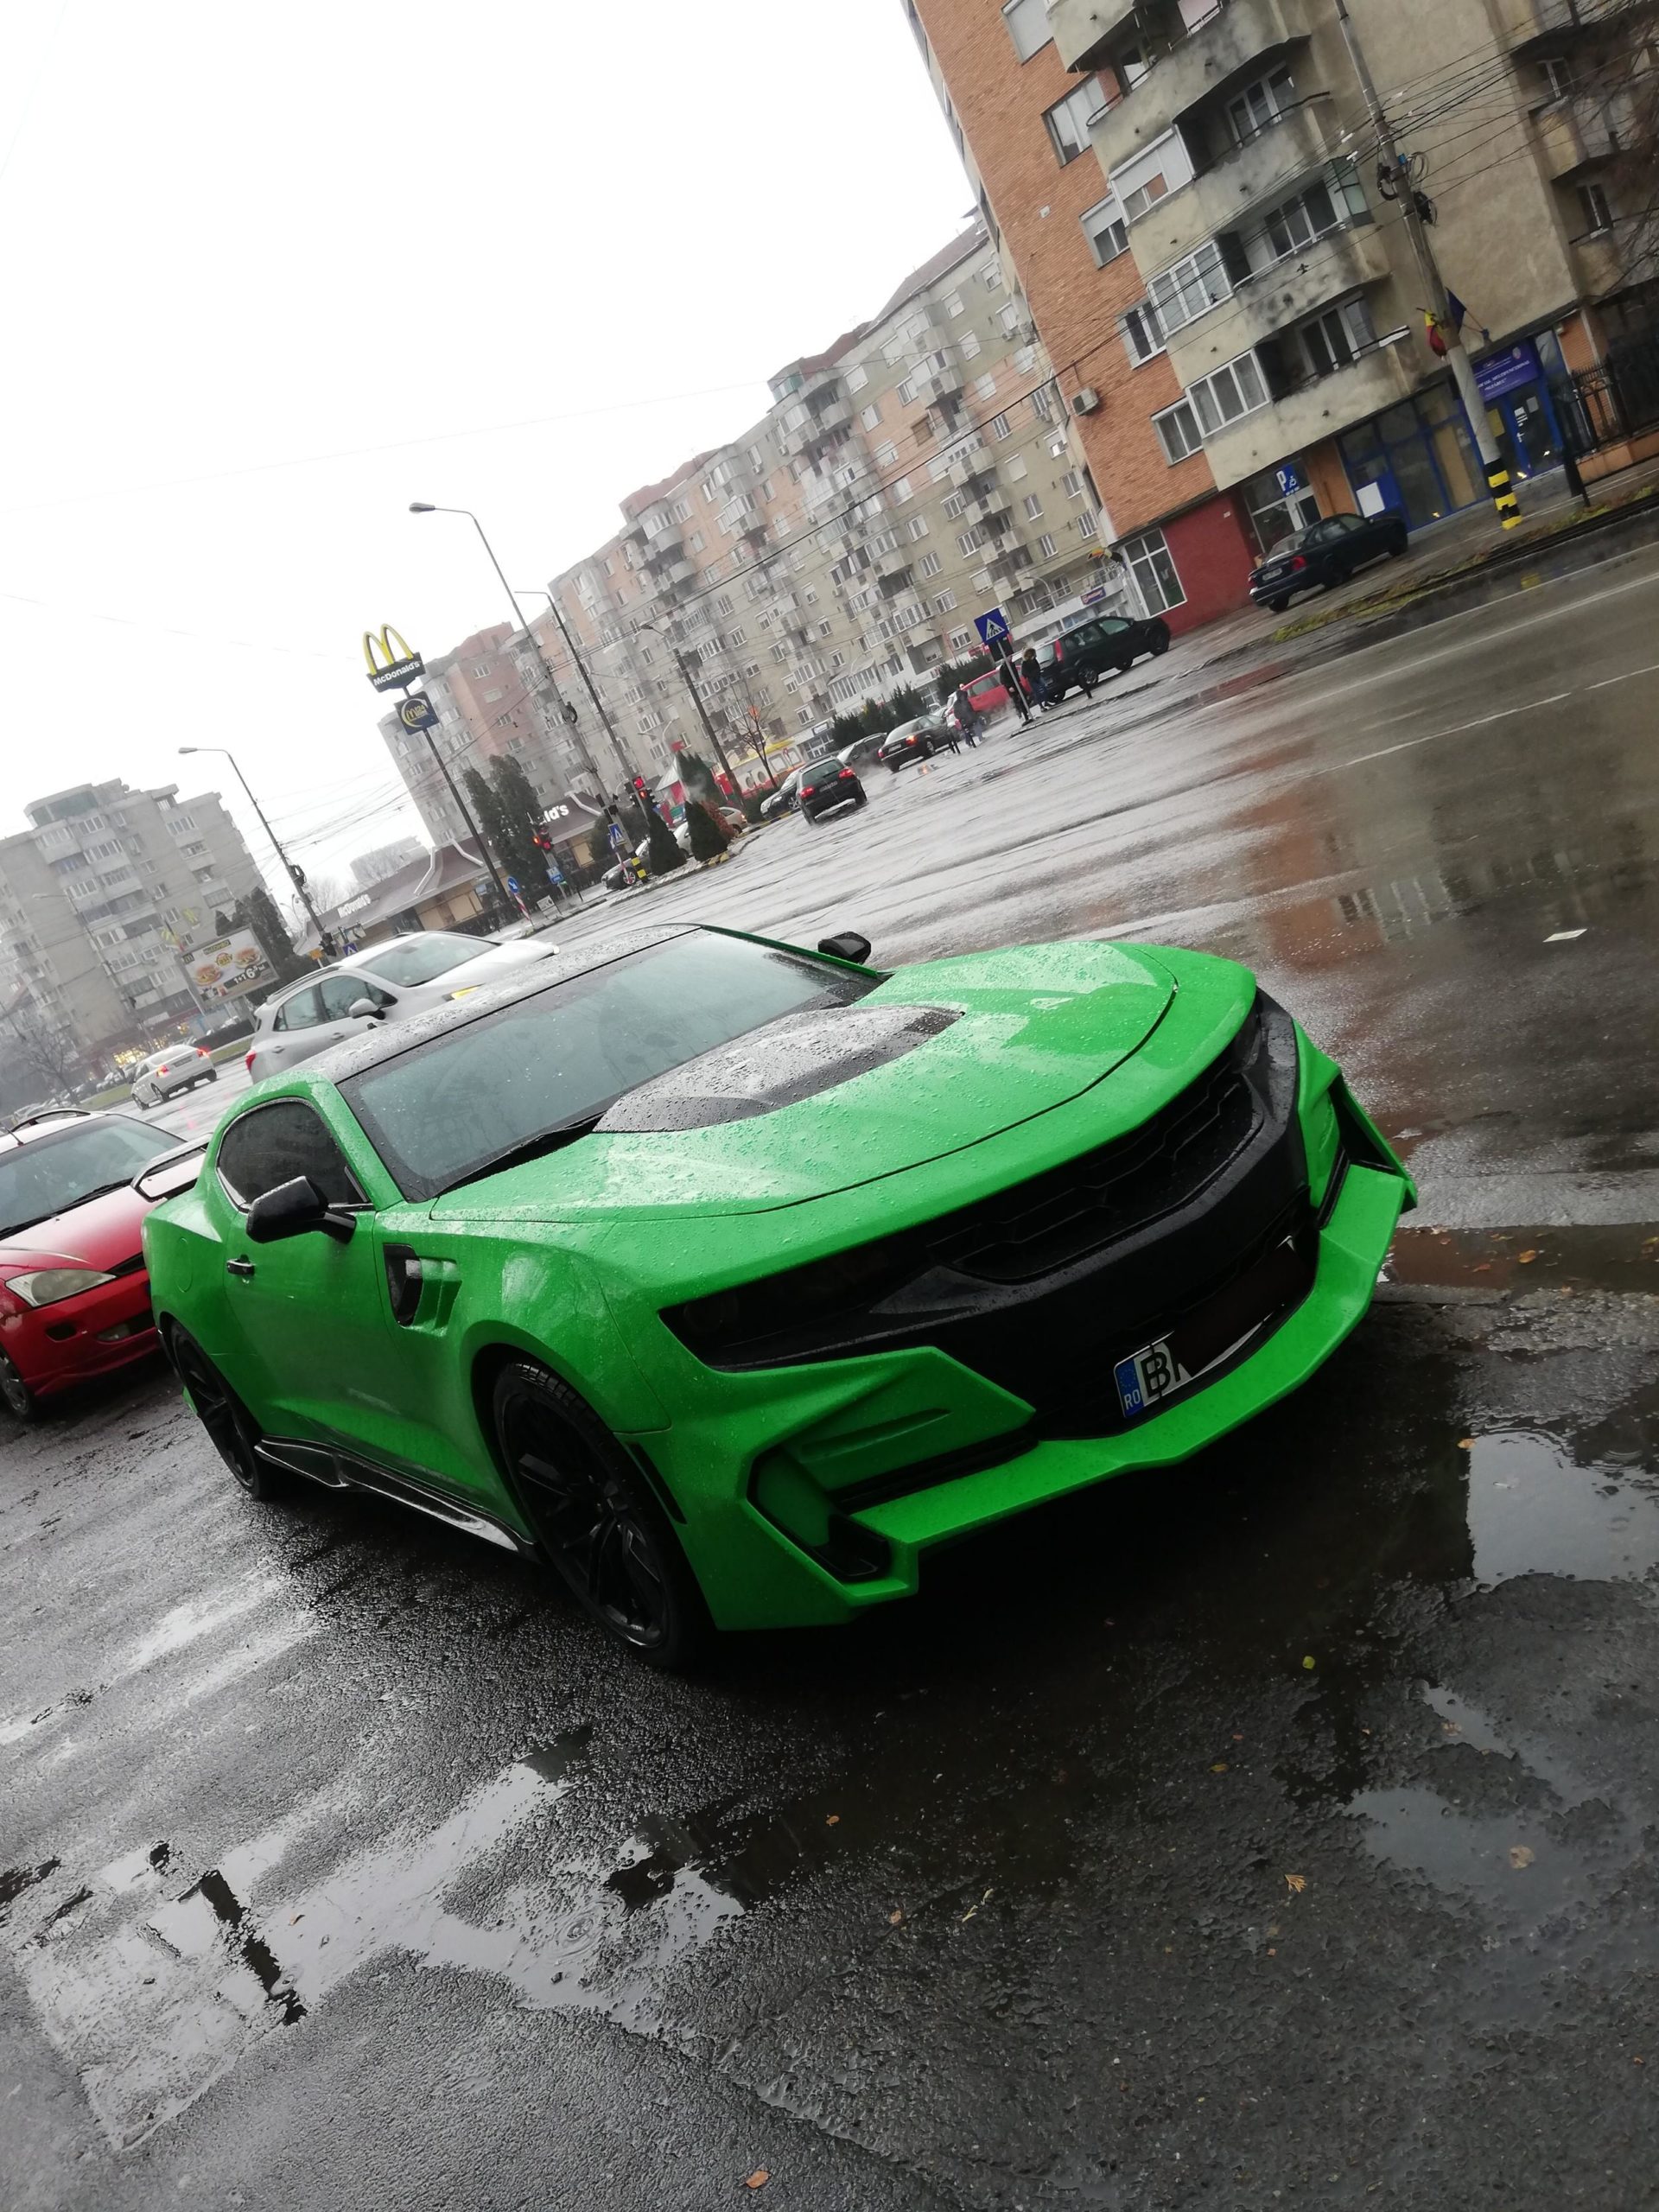 [OC] Chevrolet Camaro spotted in Oradea, Romania